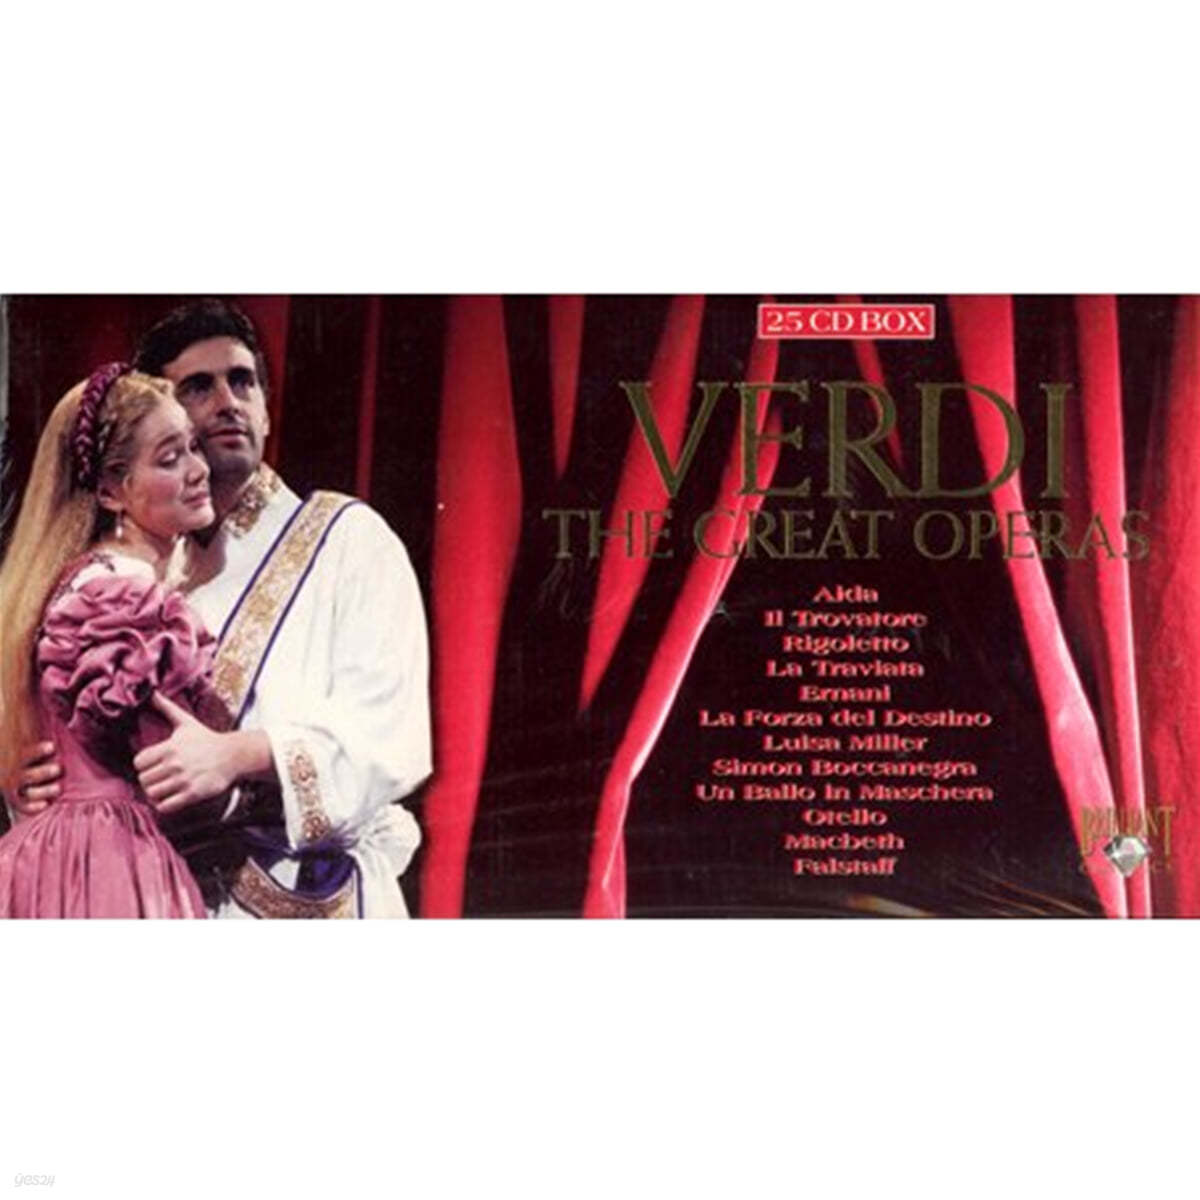 베르디 : 위대한 오페라들 (Verdi : The Great Operas)